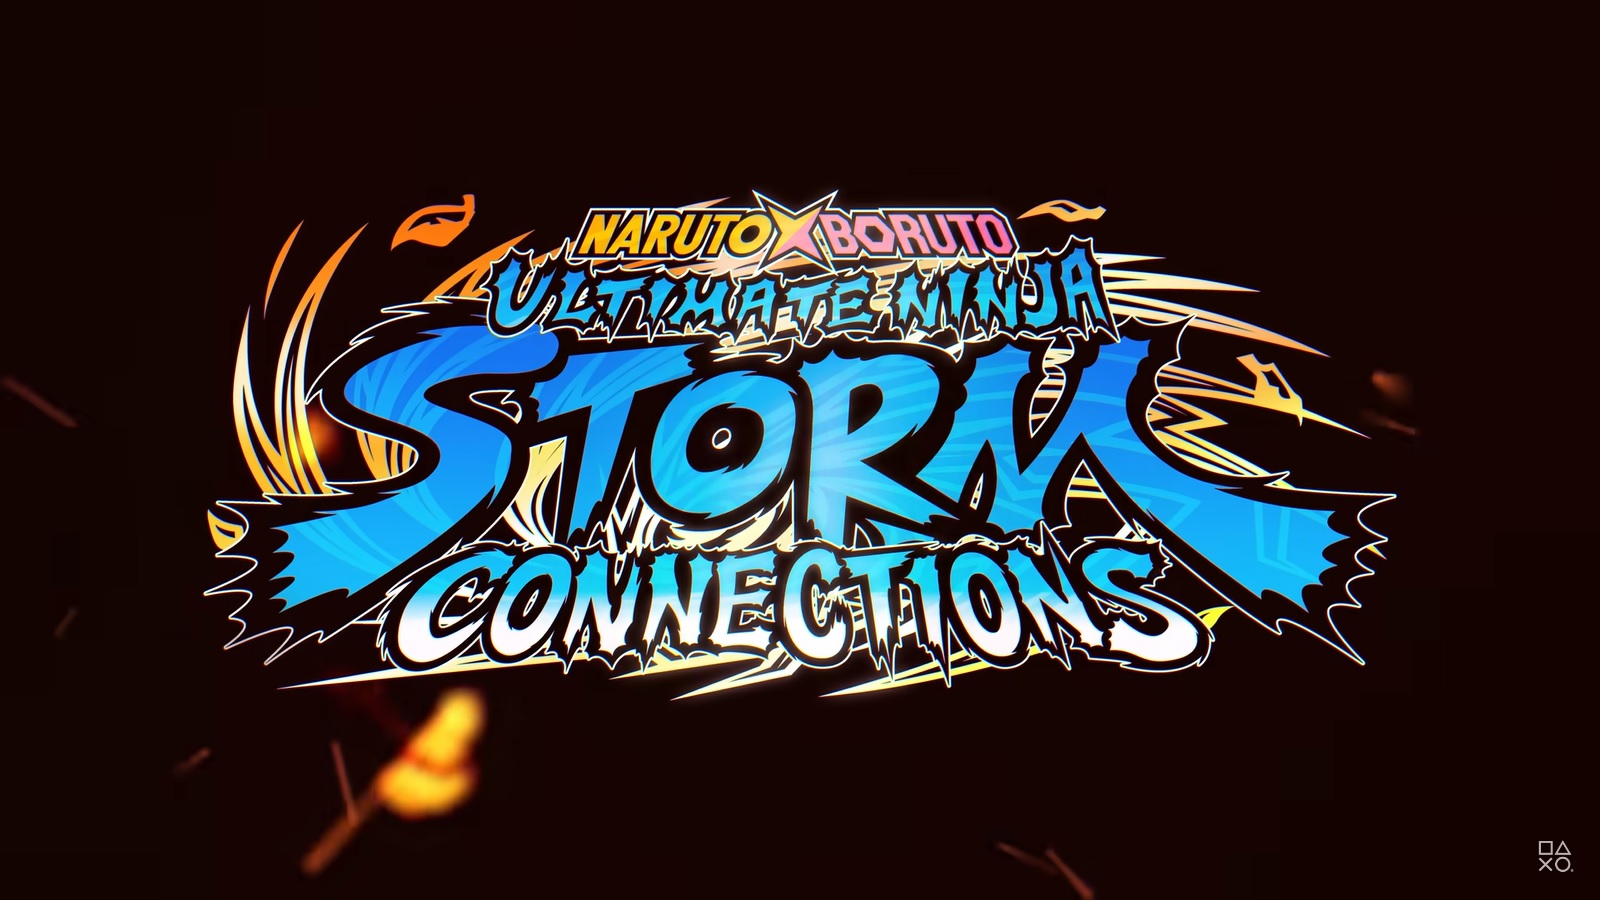 Naruto X Boruto Ultimate Ninja Storm Connections trailer analysis